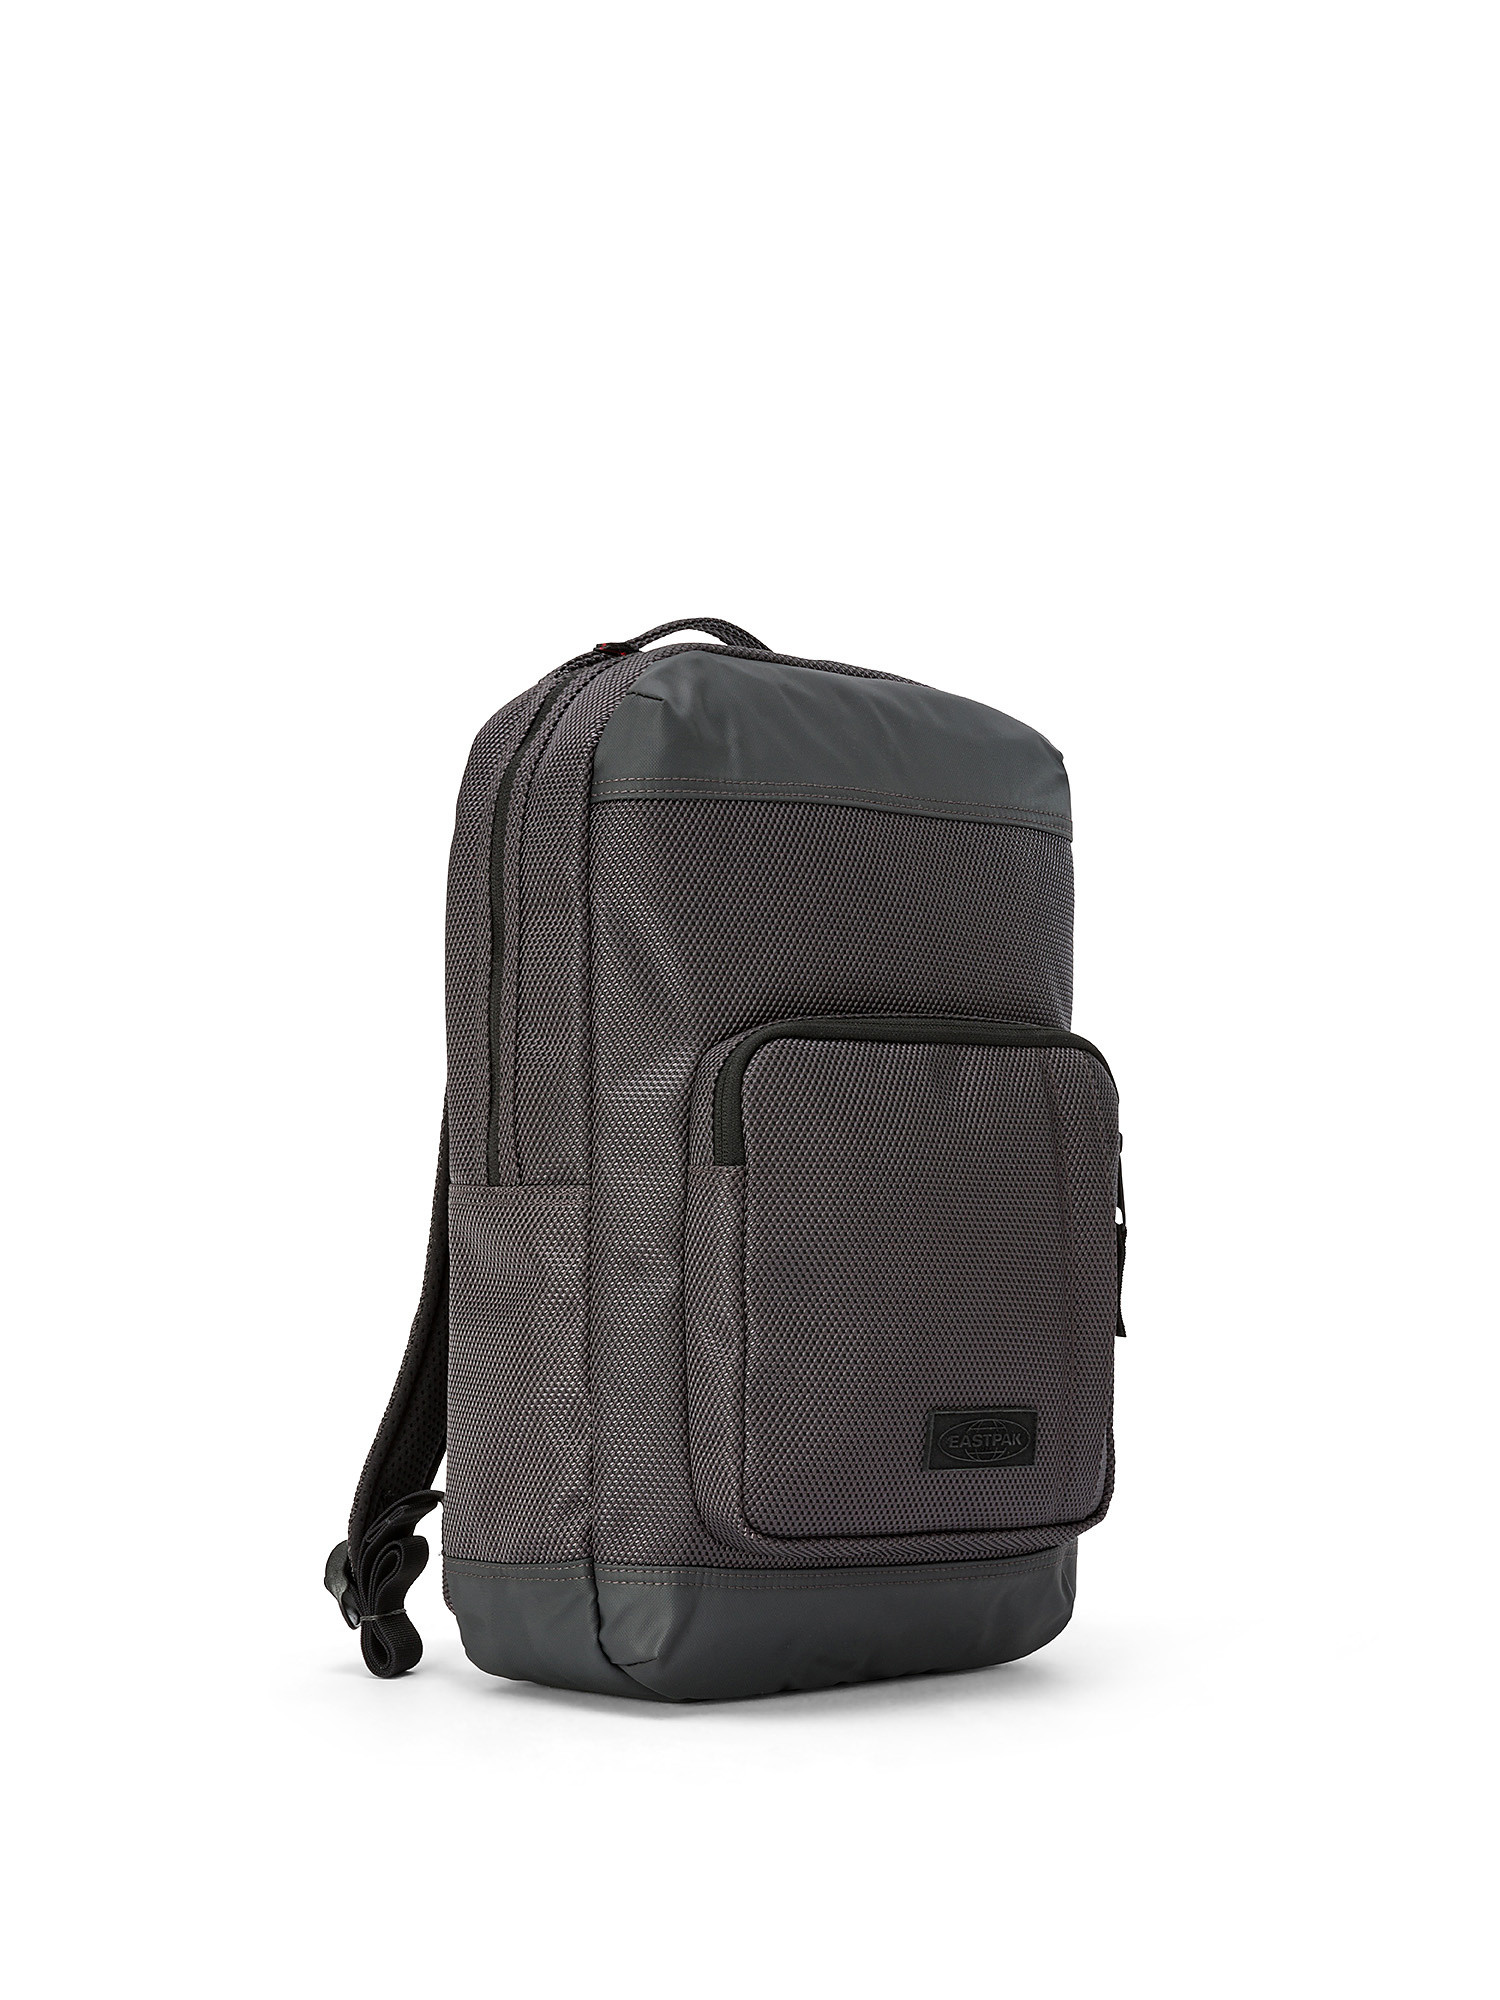 Eastpak - Tecum S Backpack, Grey, large image number 1